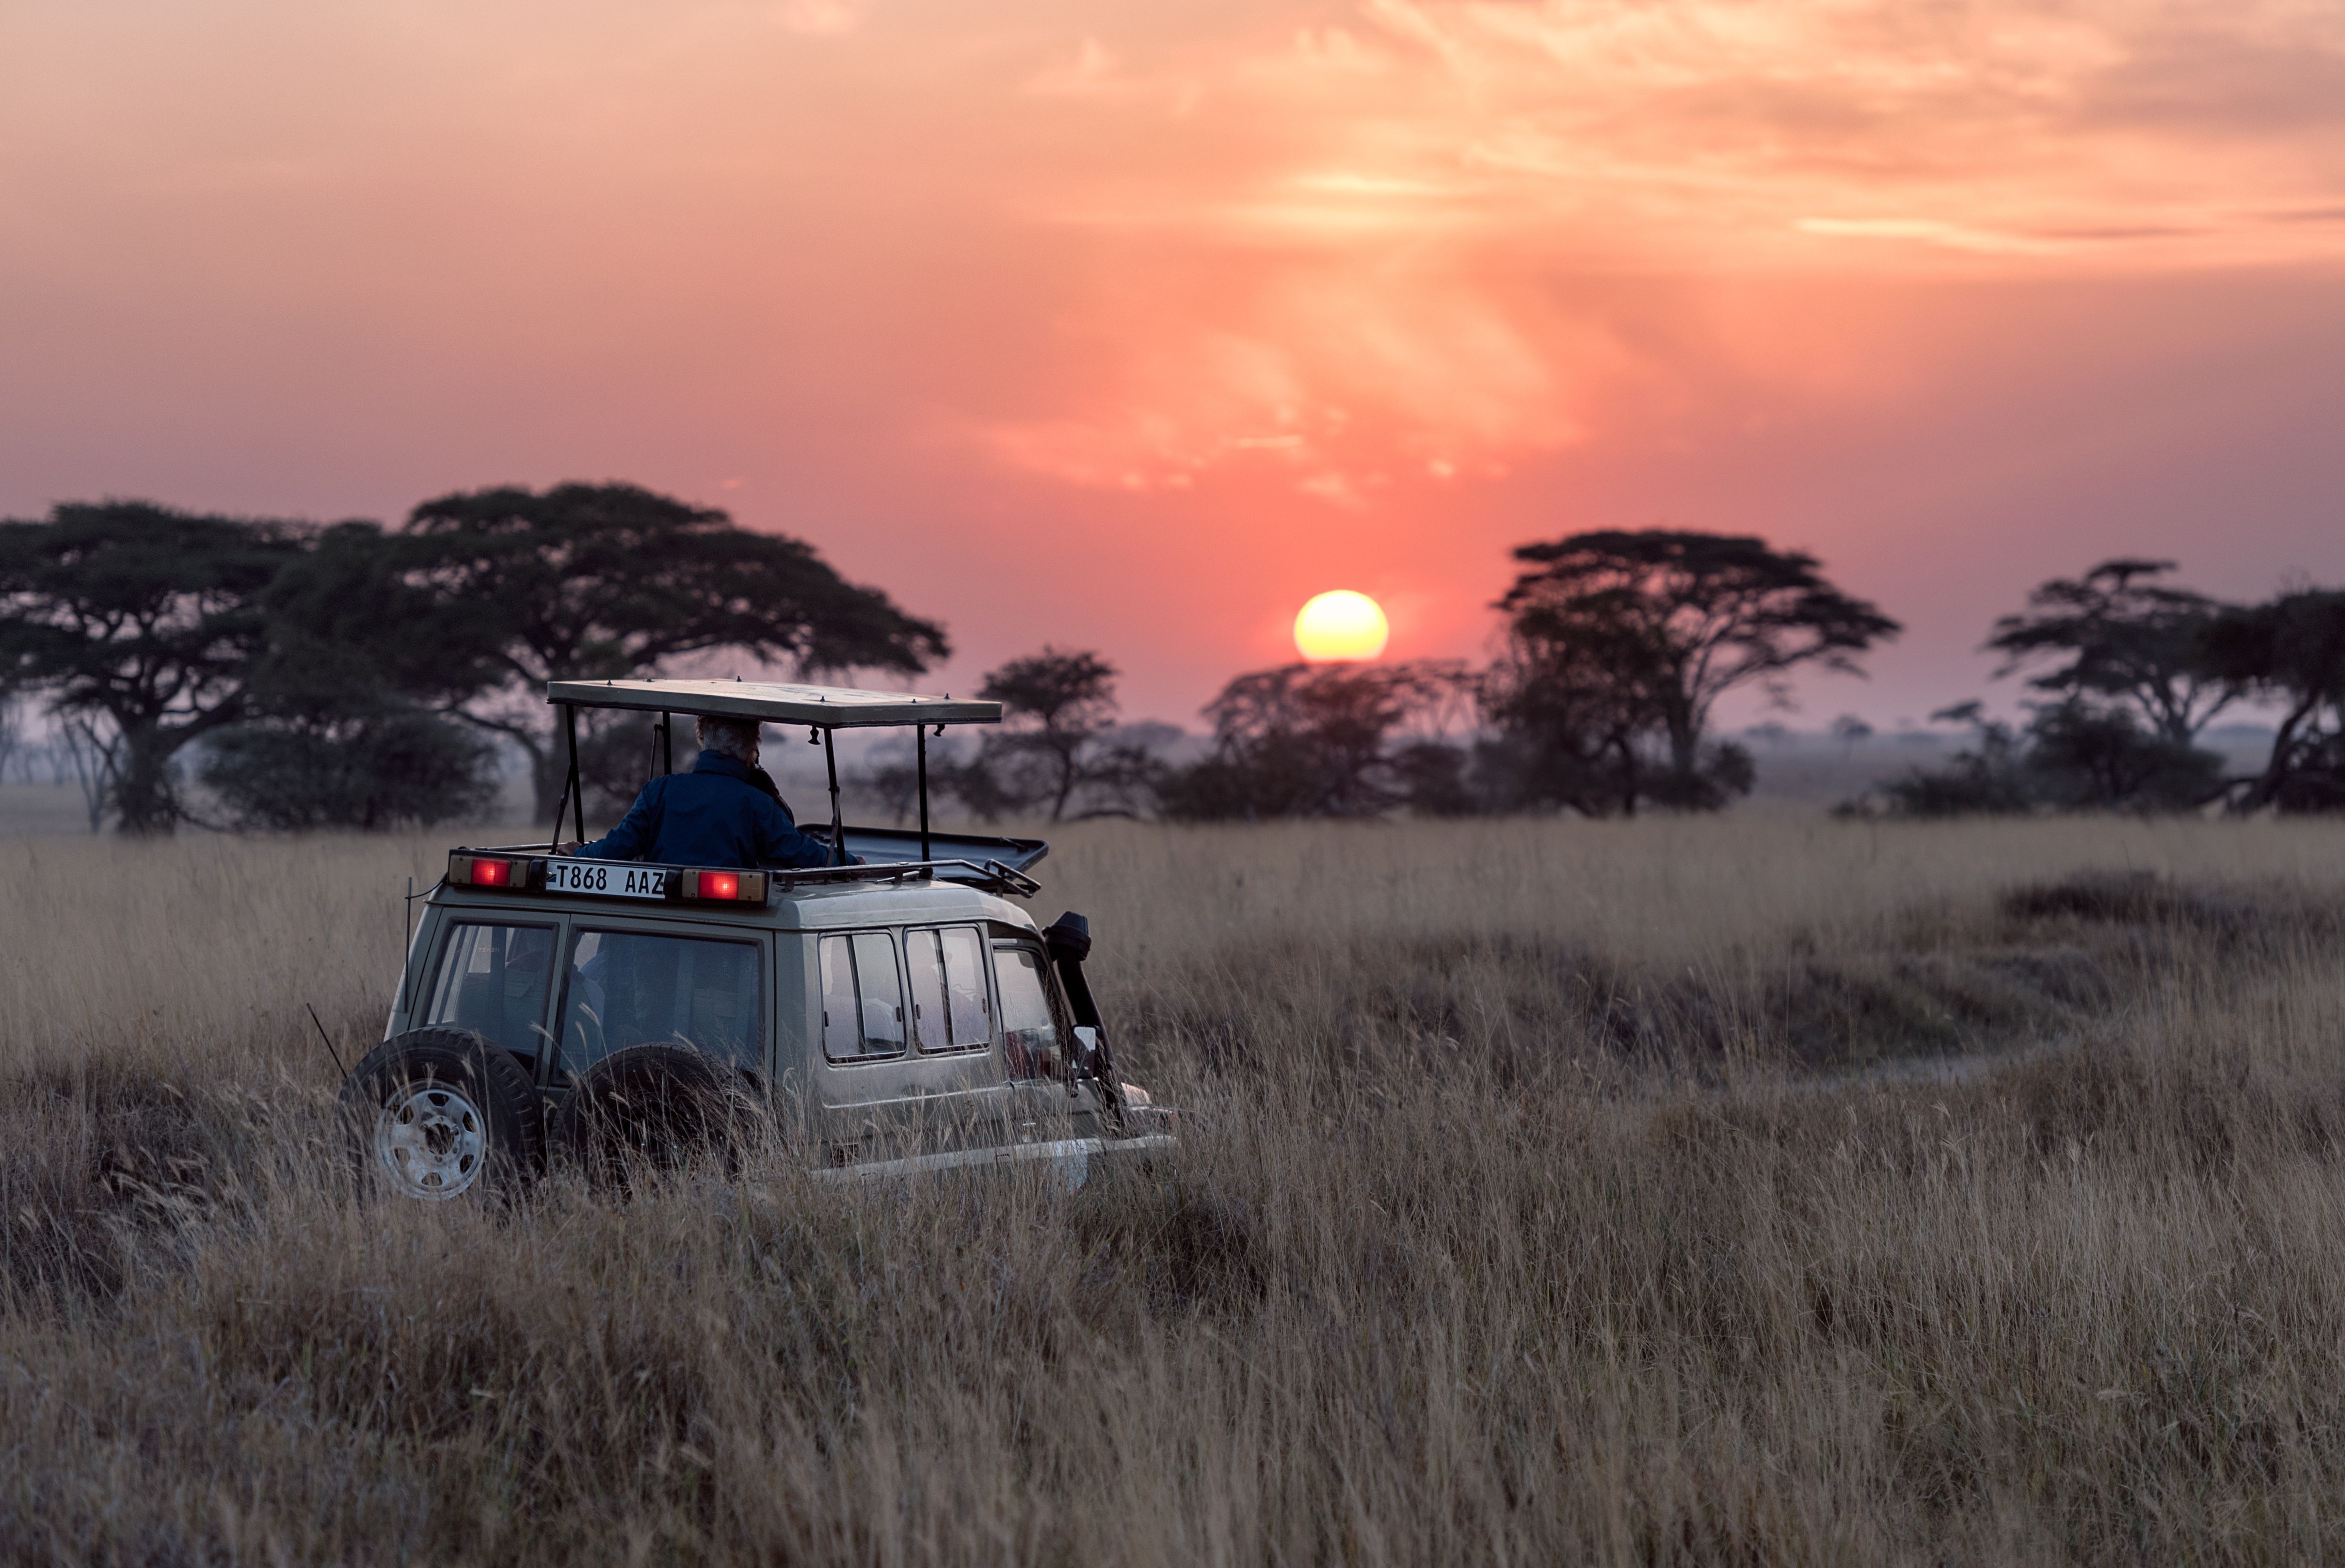  4x4 safari in Kenya at sunset